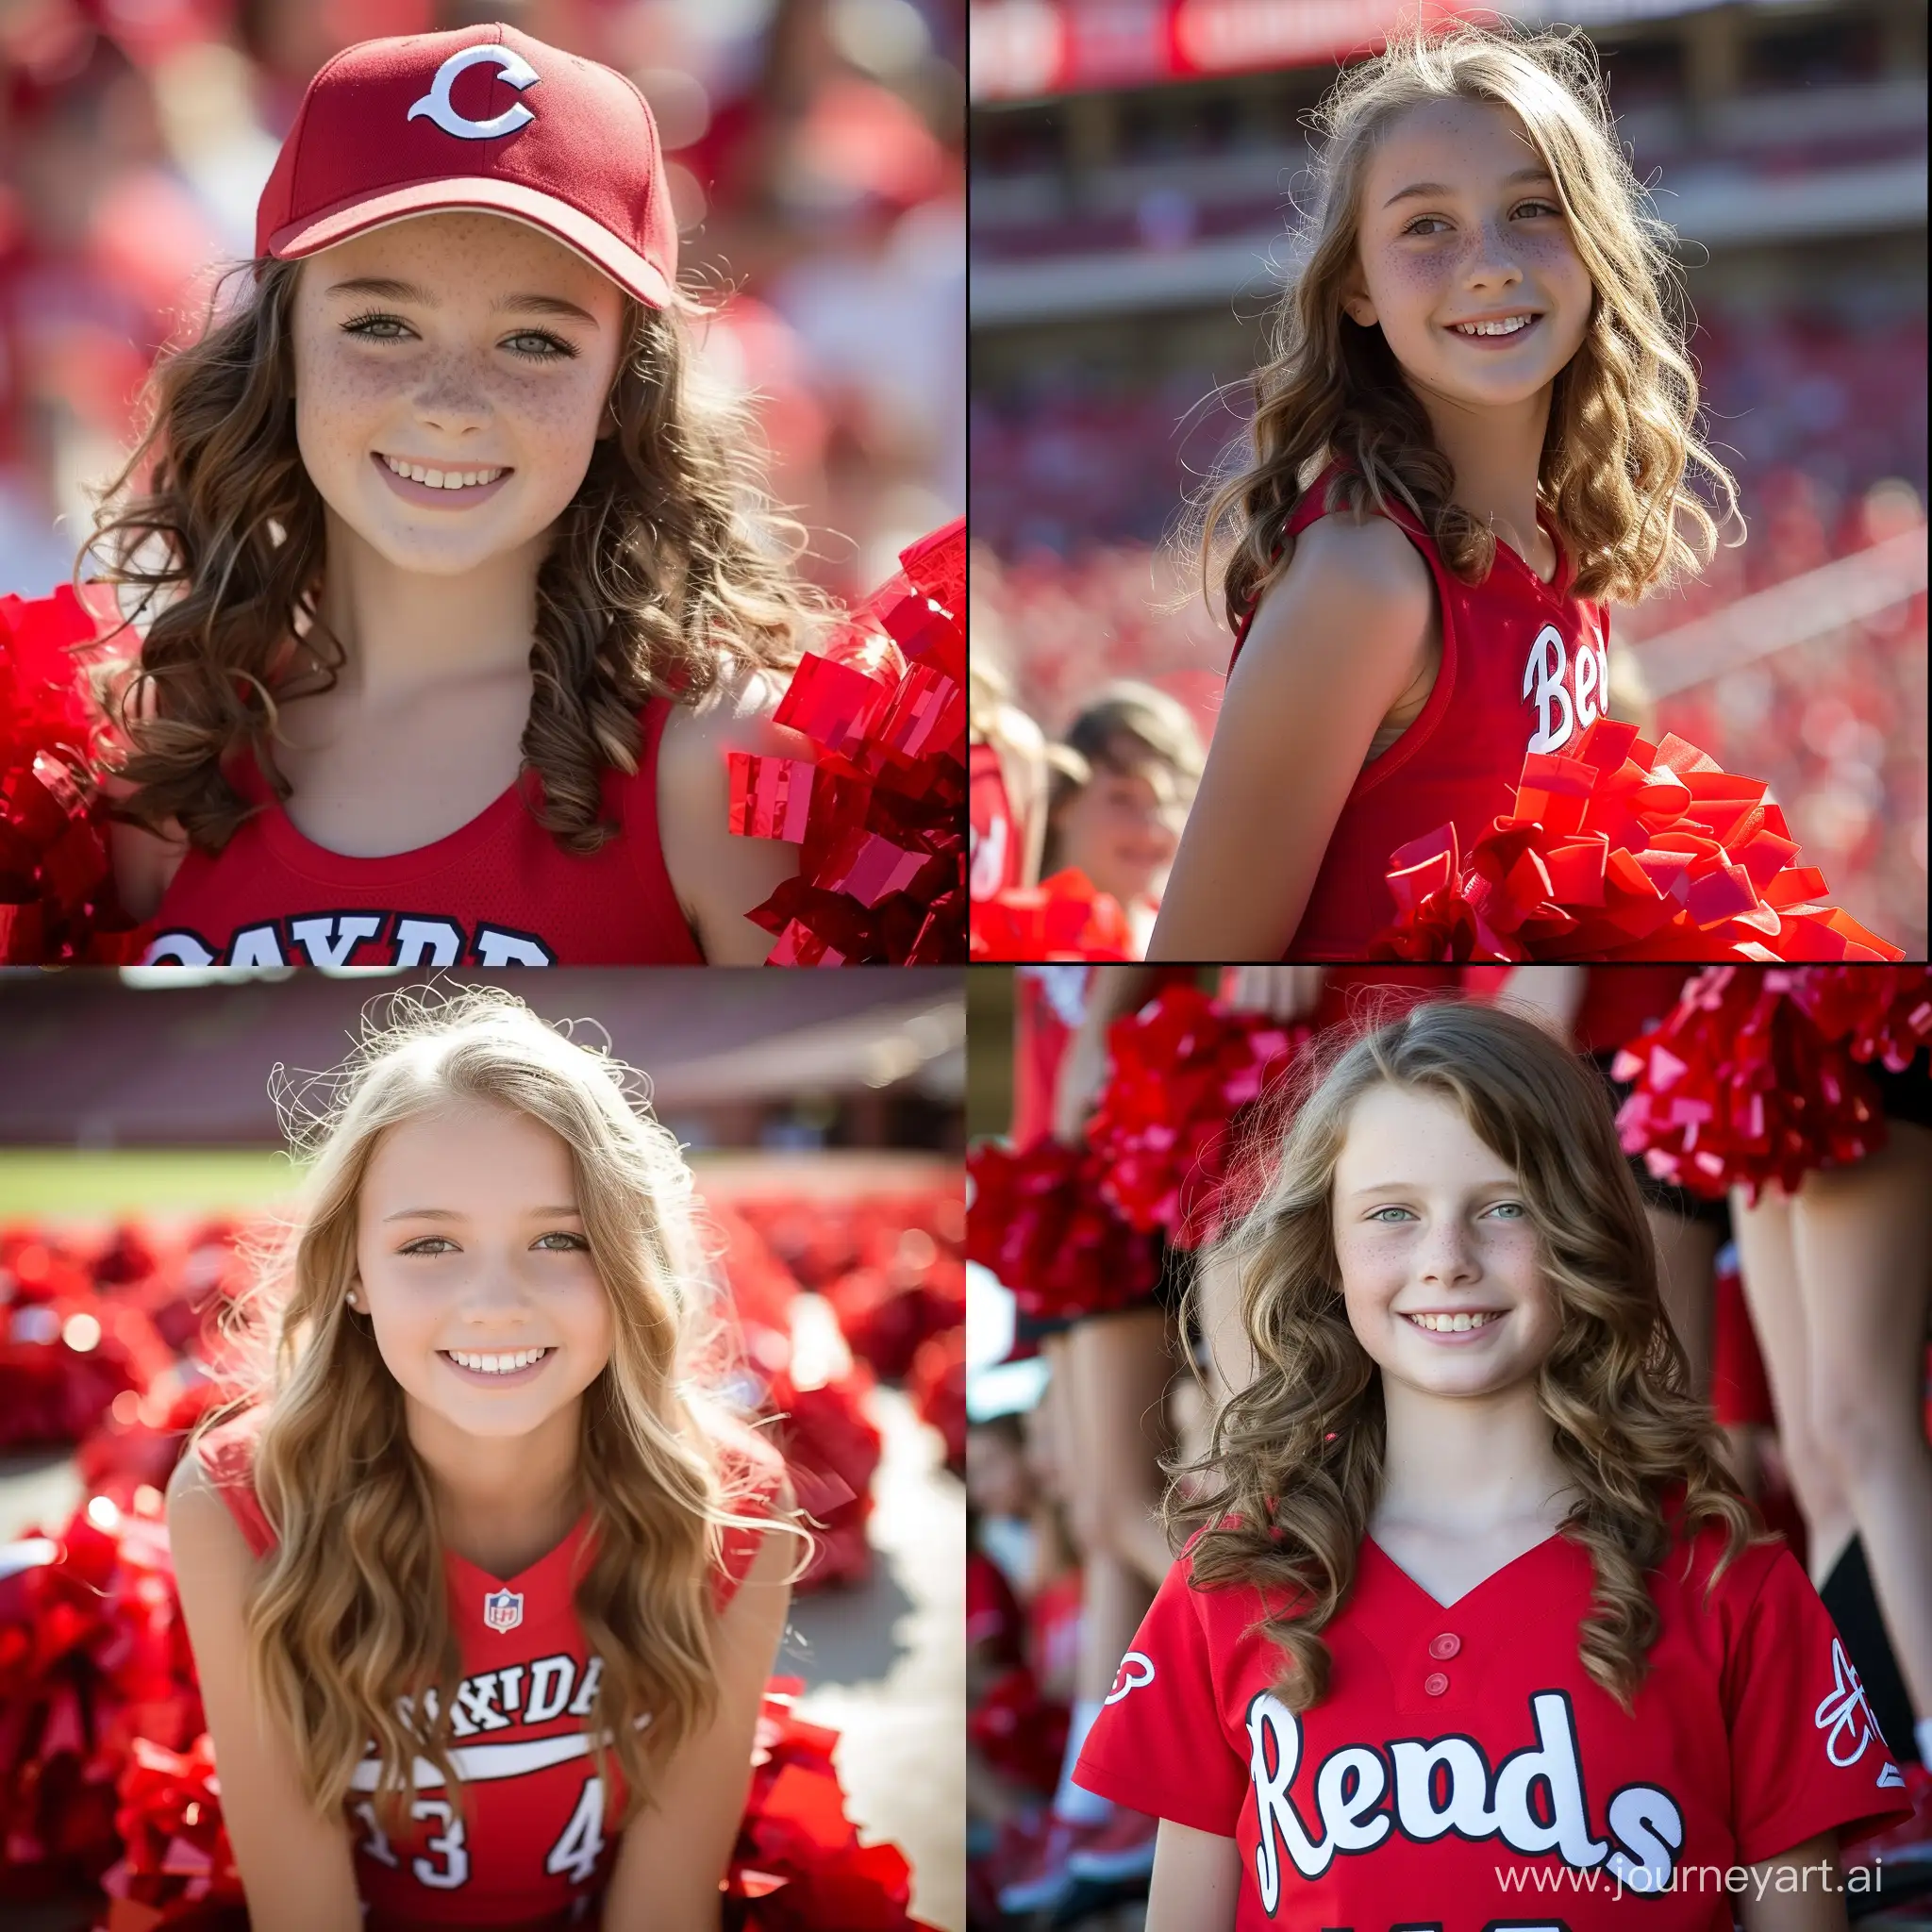 Cincinnati Reds 13-14 year old cheerleader